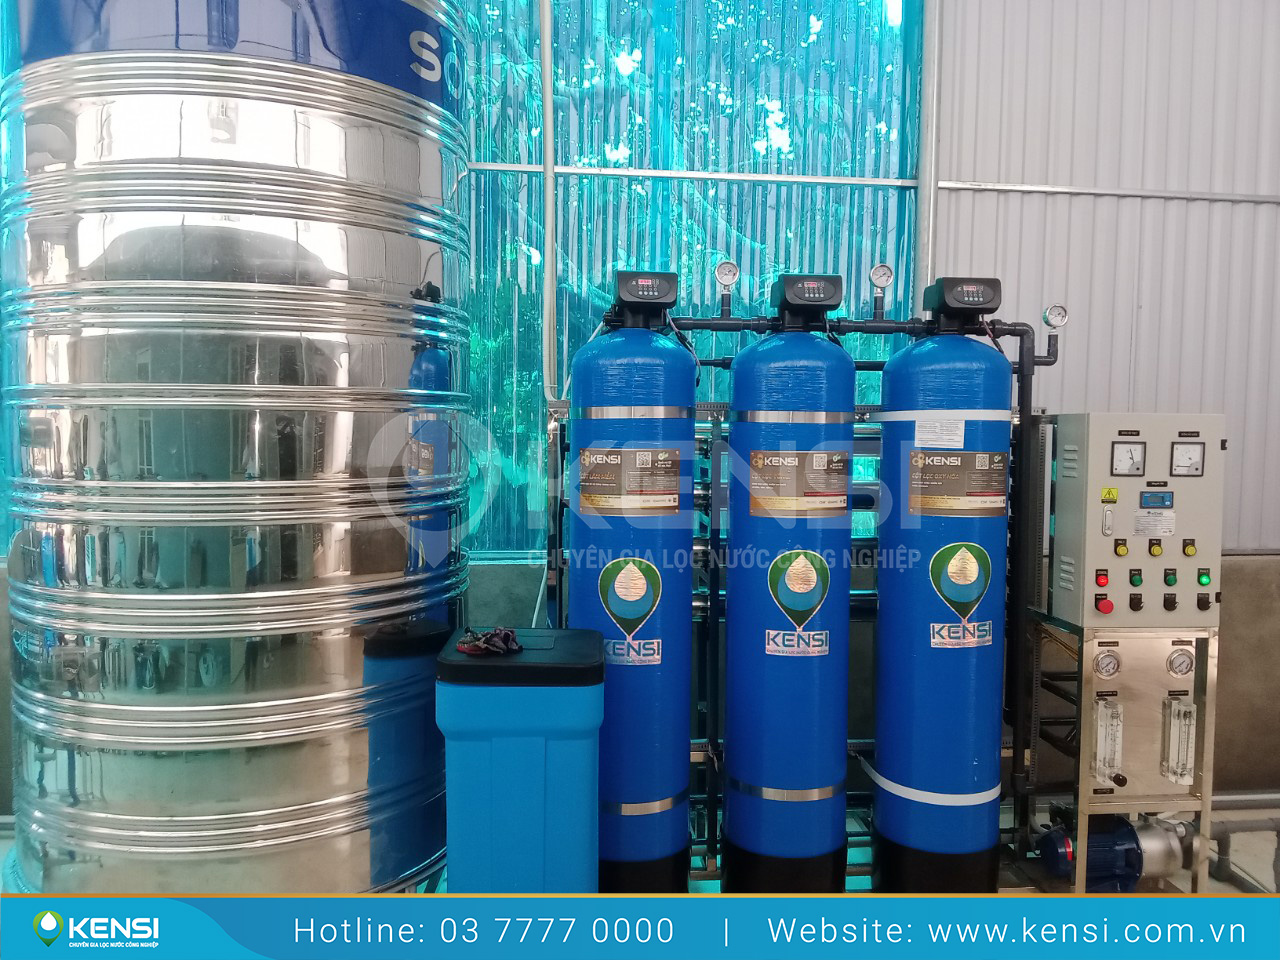 Tekcom cung cấp thiết bị và giải pháp xử lý nguồn nước cứng